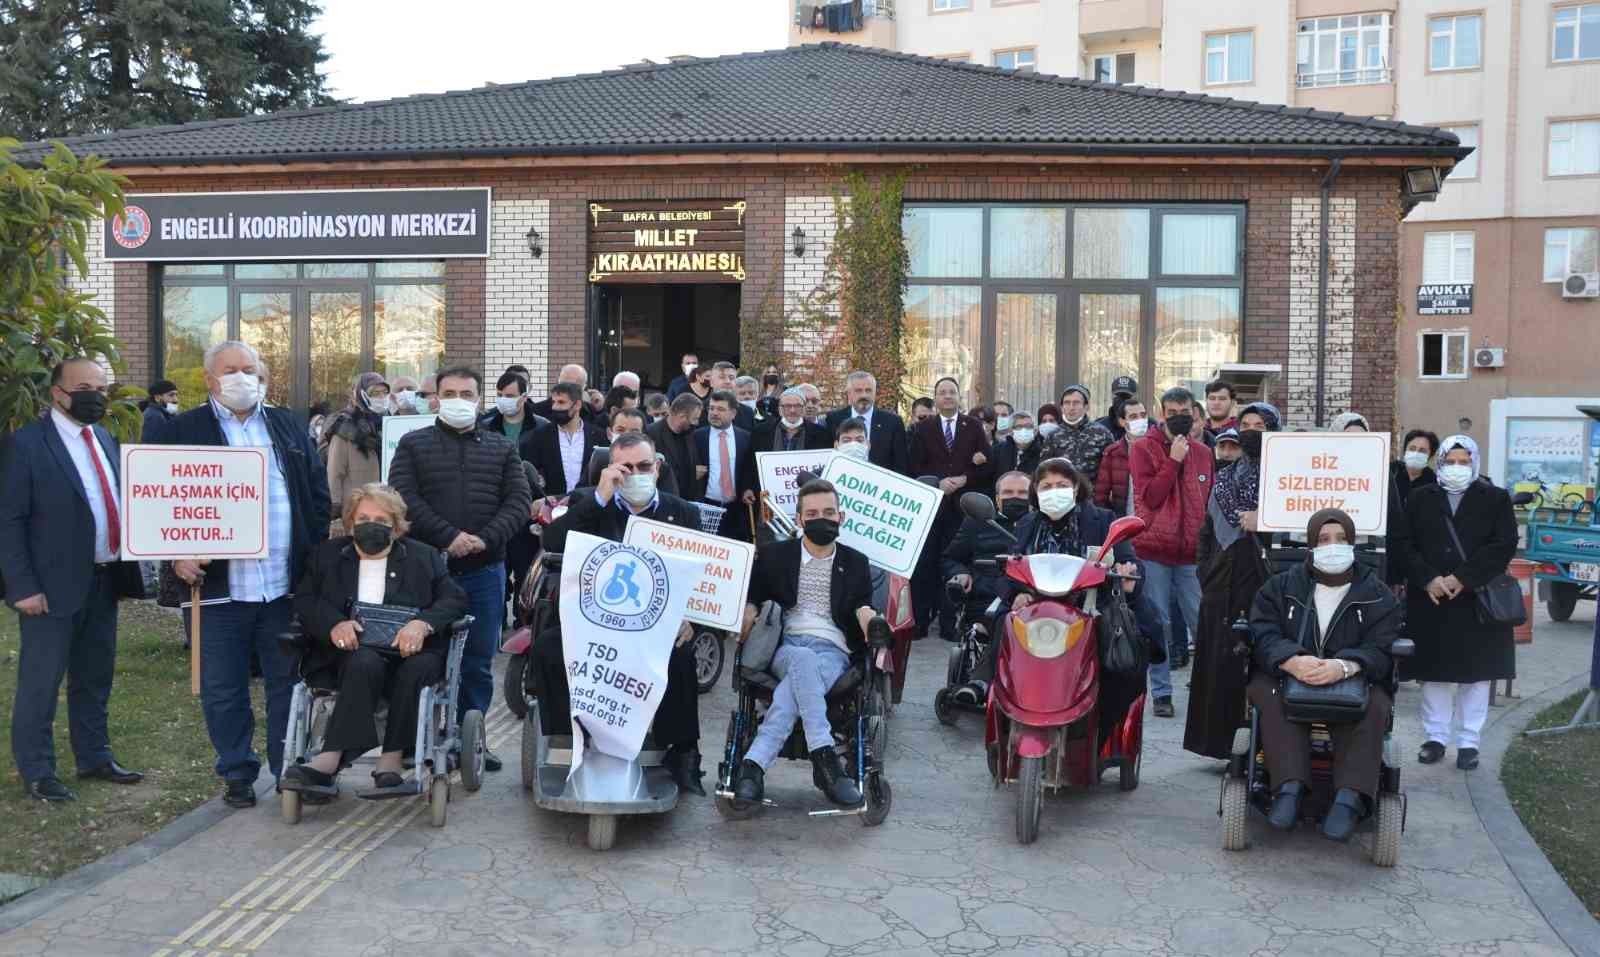 Engellilerin el emeği ürünleri sergilendi #samsun